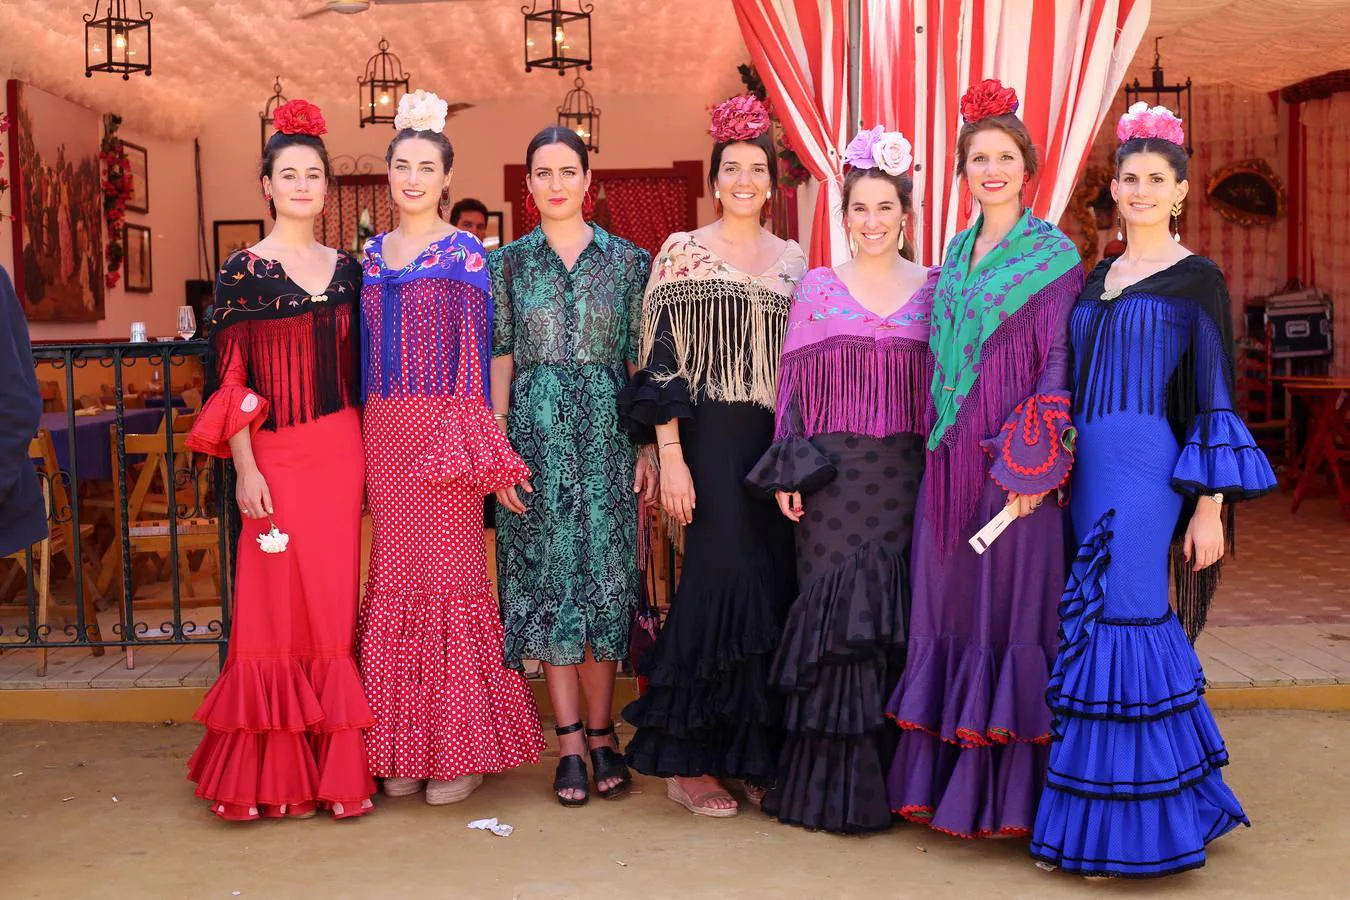 Leonor Alarcón, Beatriz de los Mozos, Espe Núñez, Patricia Garcia-Ventosa, María Ybarra, Cristina Moreno de la Cova y Flaminia González-Barba